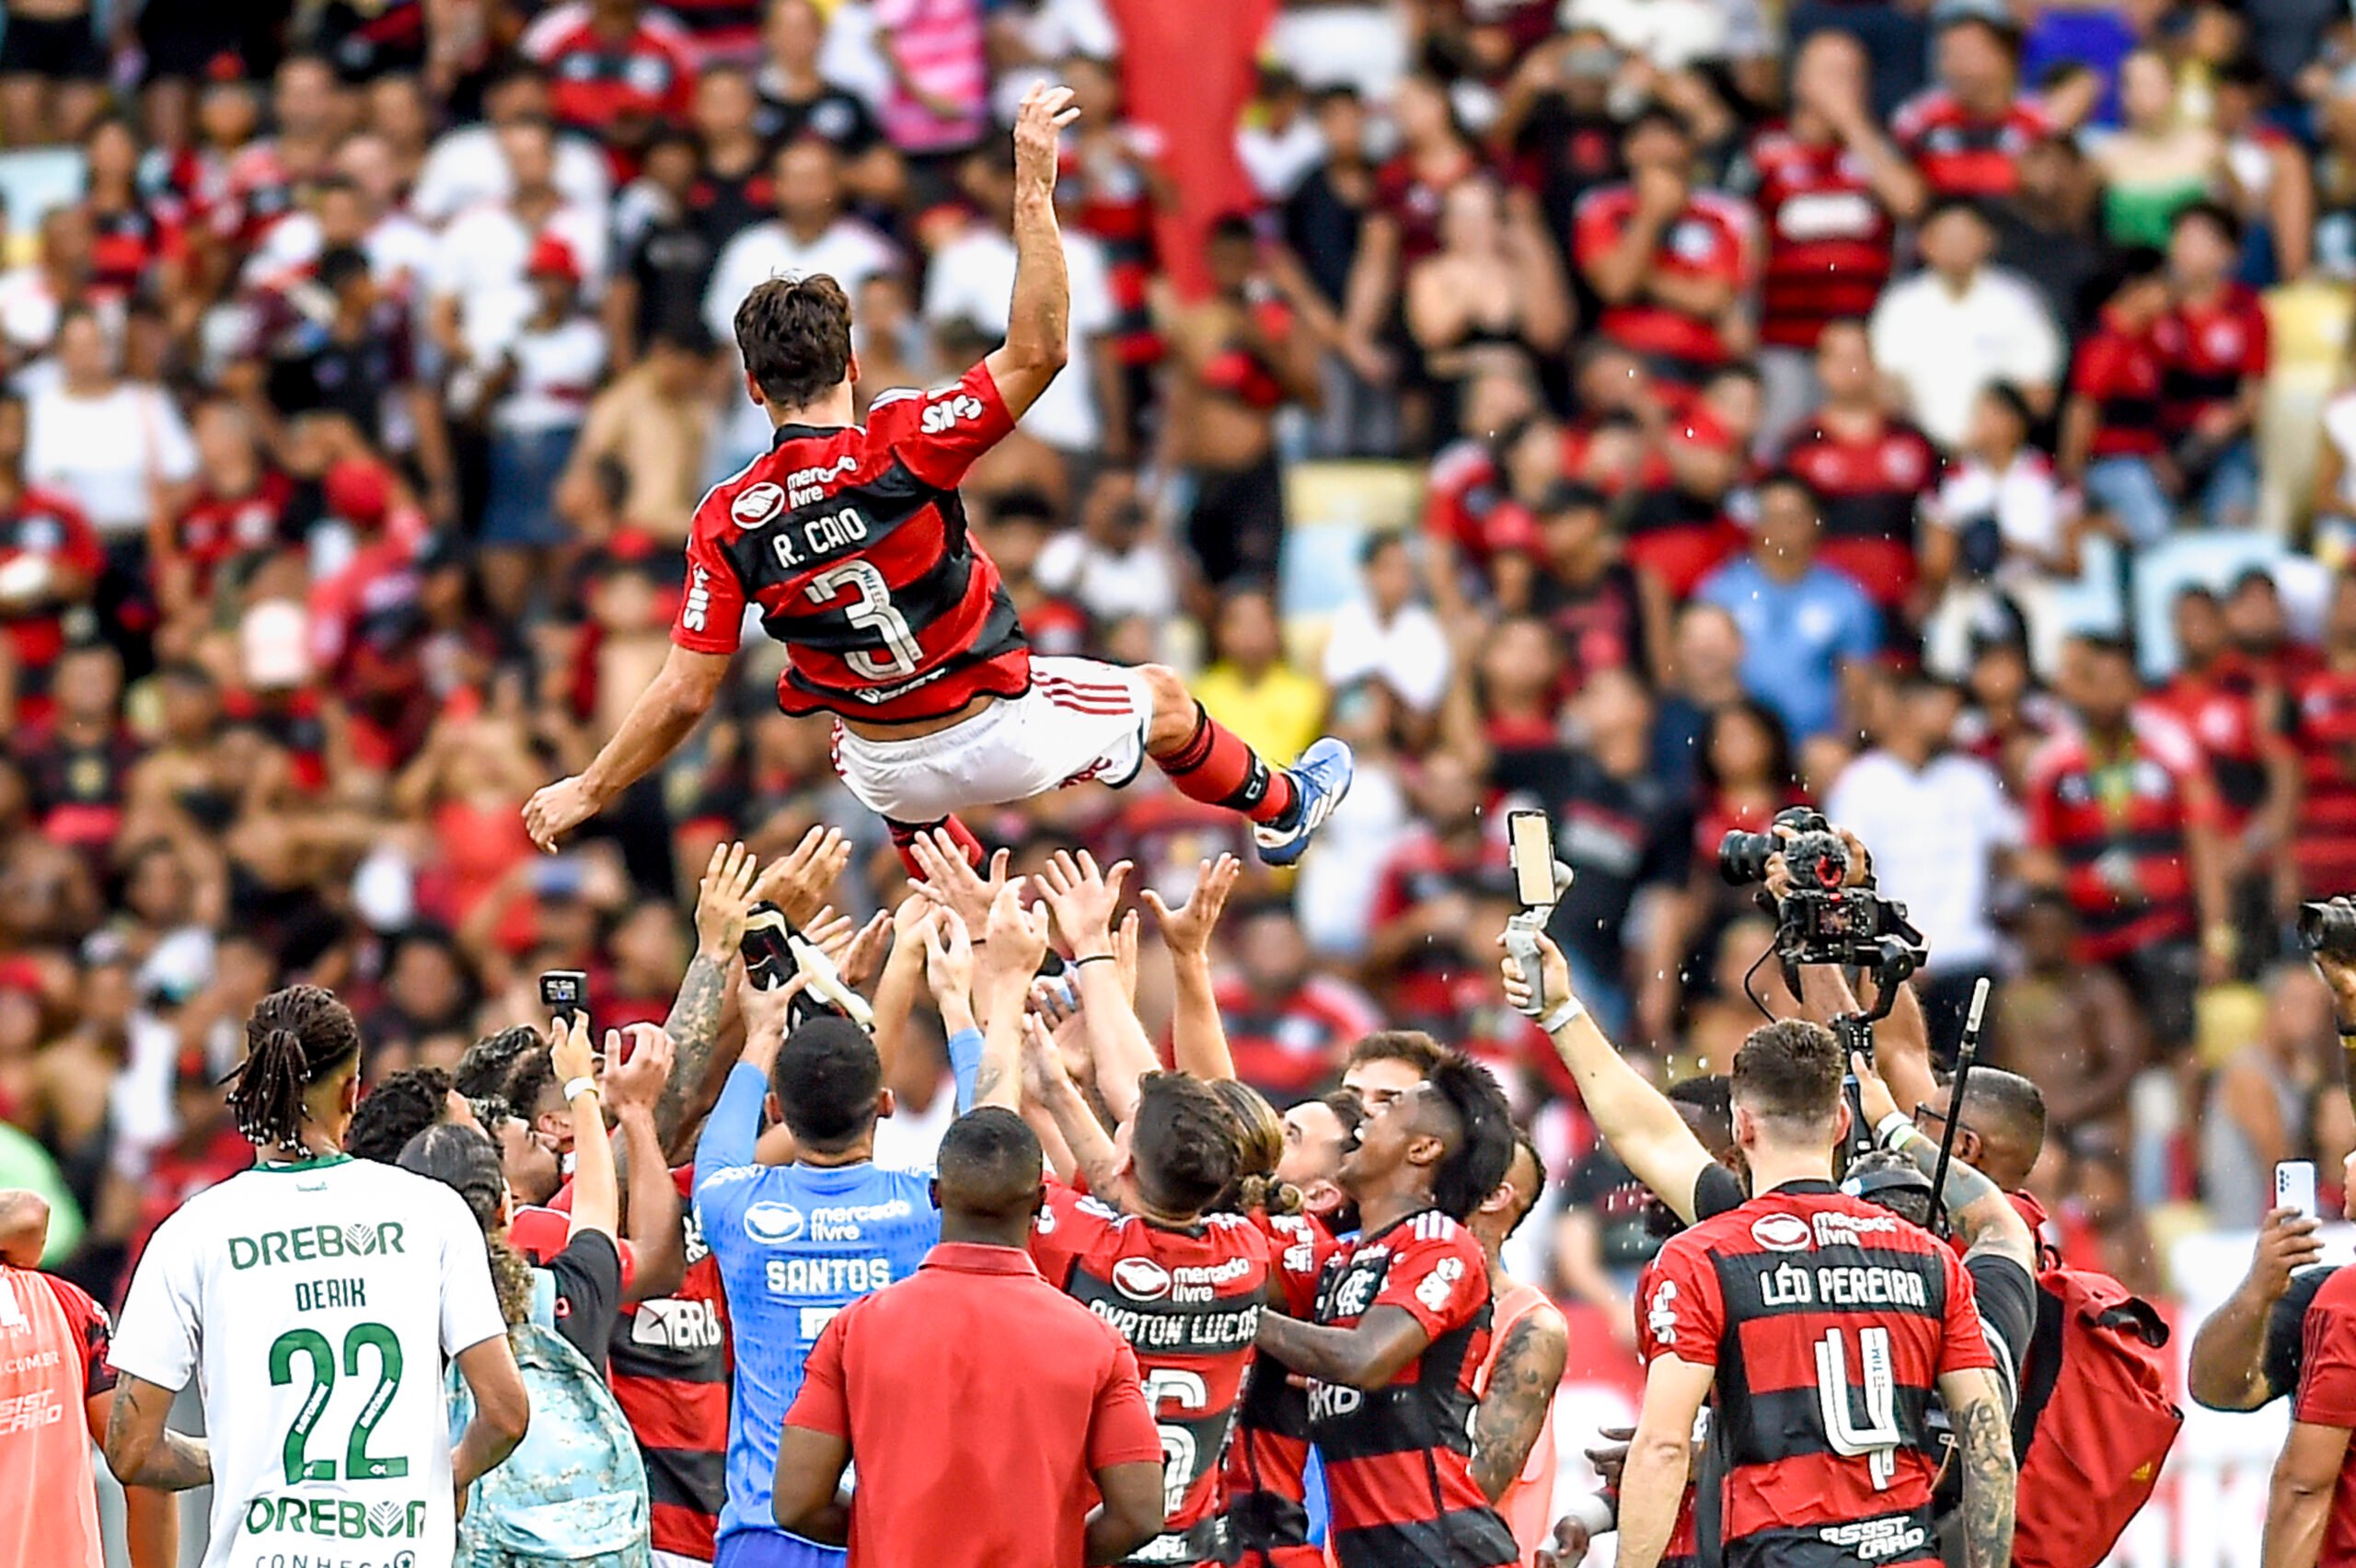 Rodrigo Caio - Player profile 2023